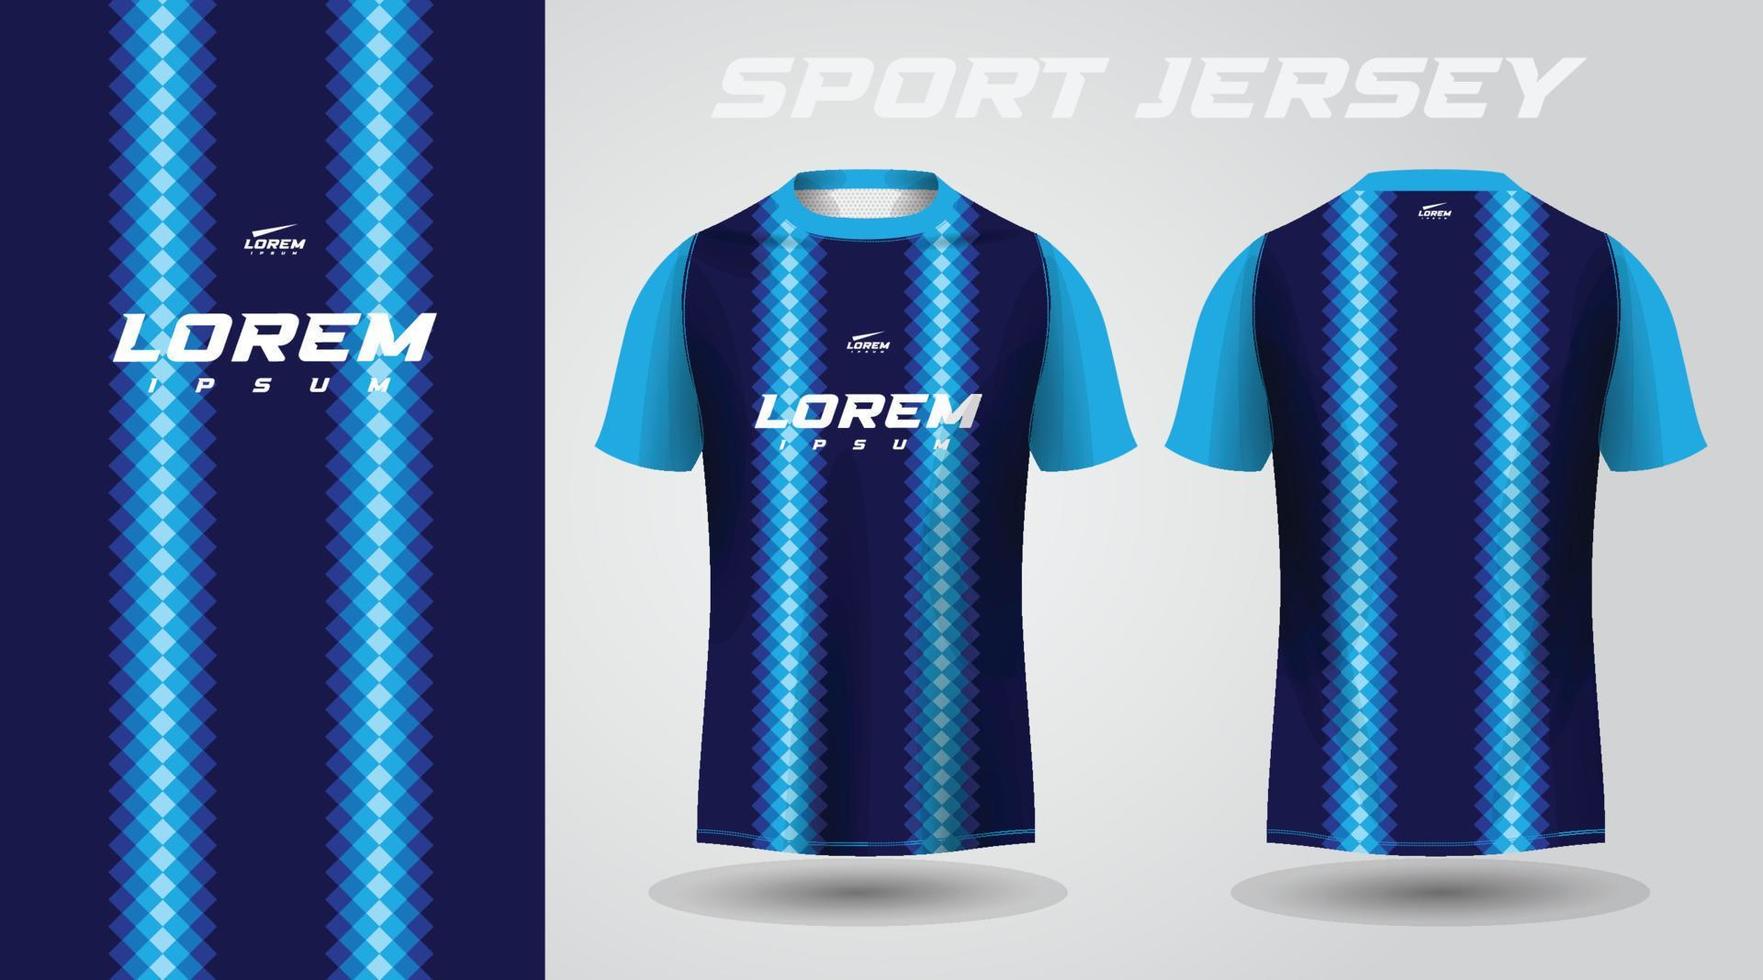 Blue Jersey Shirt Images - Free Download on Freepik